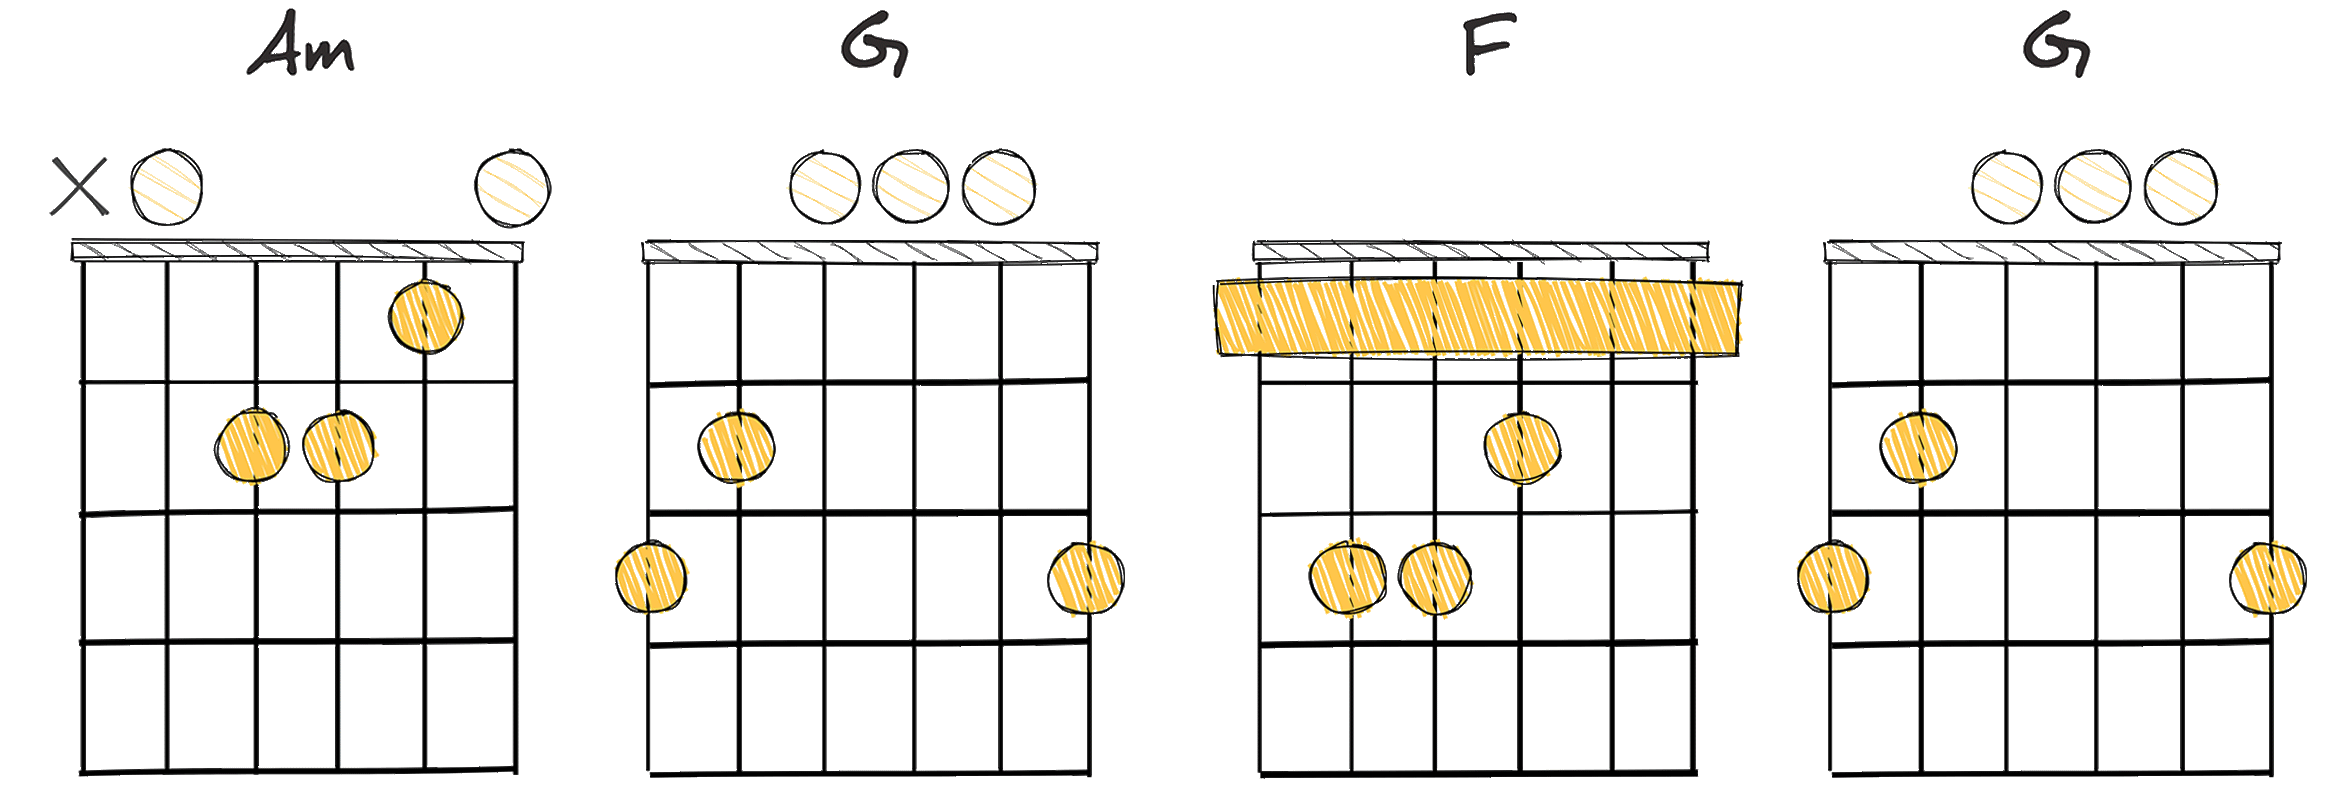 vi - V - IV - V  (6 - 5 - 4 - 5) chords diagram